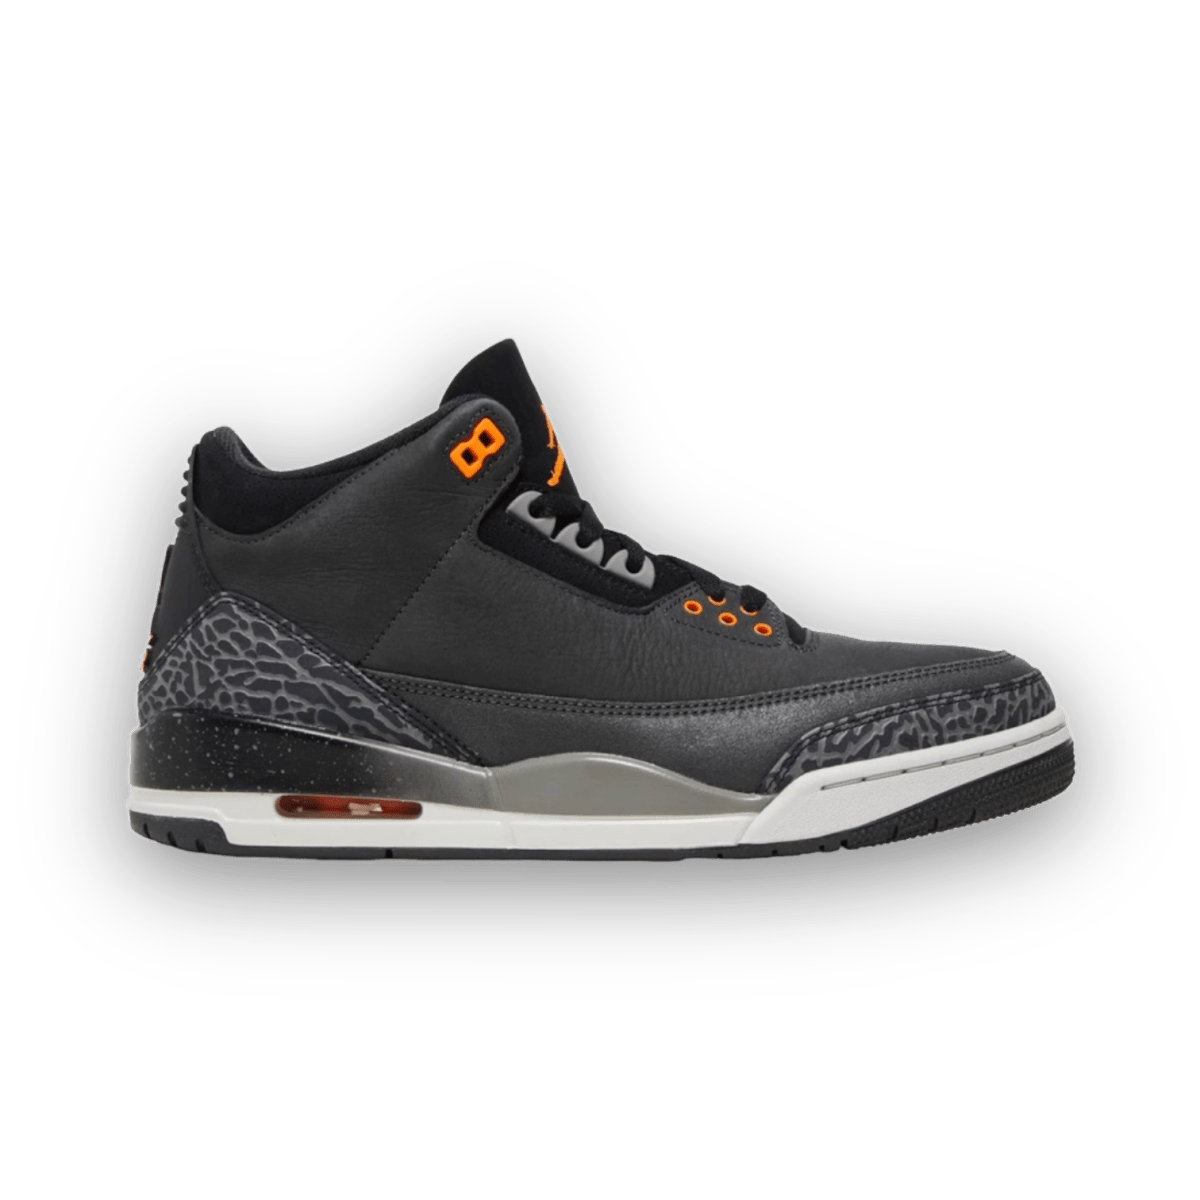 Air Jordan 3 Retro 'Fear' - Mid Sneaker - Jawns on Fire Sneakers & Streetwear